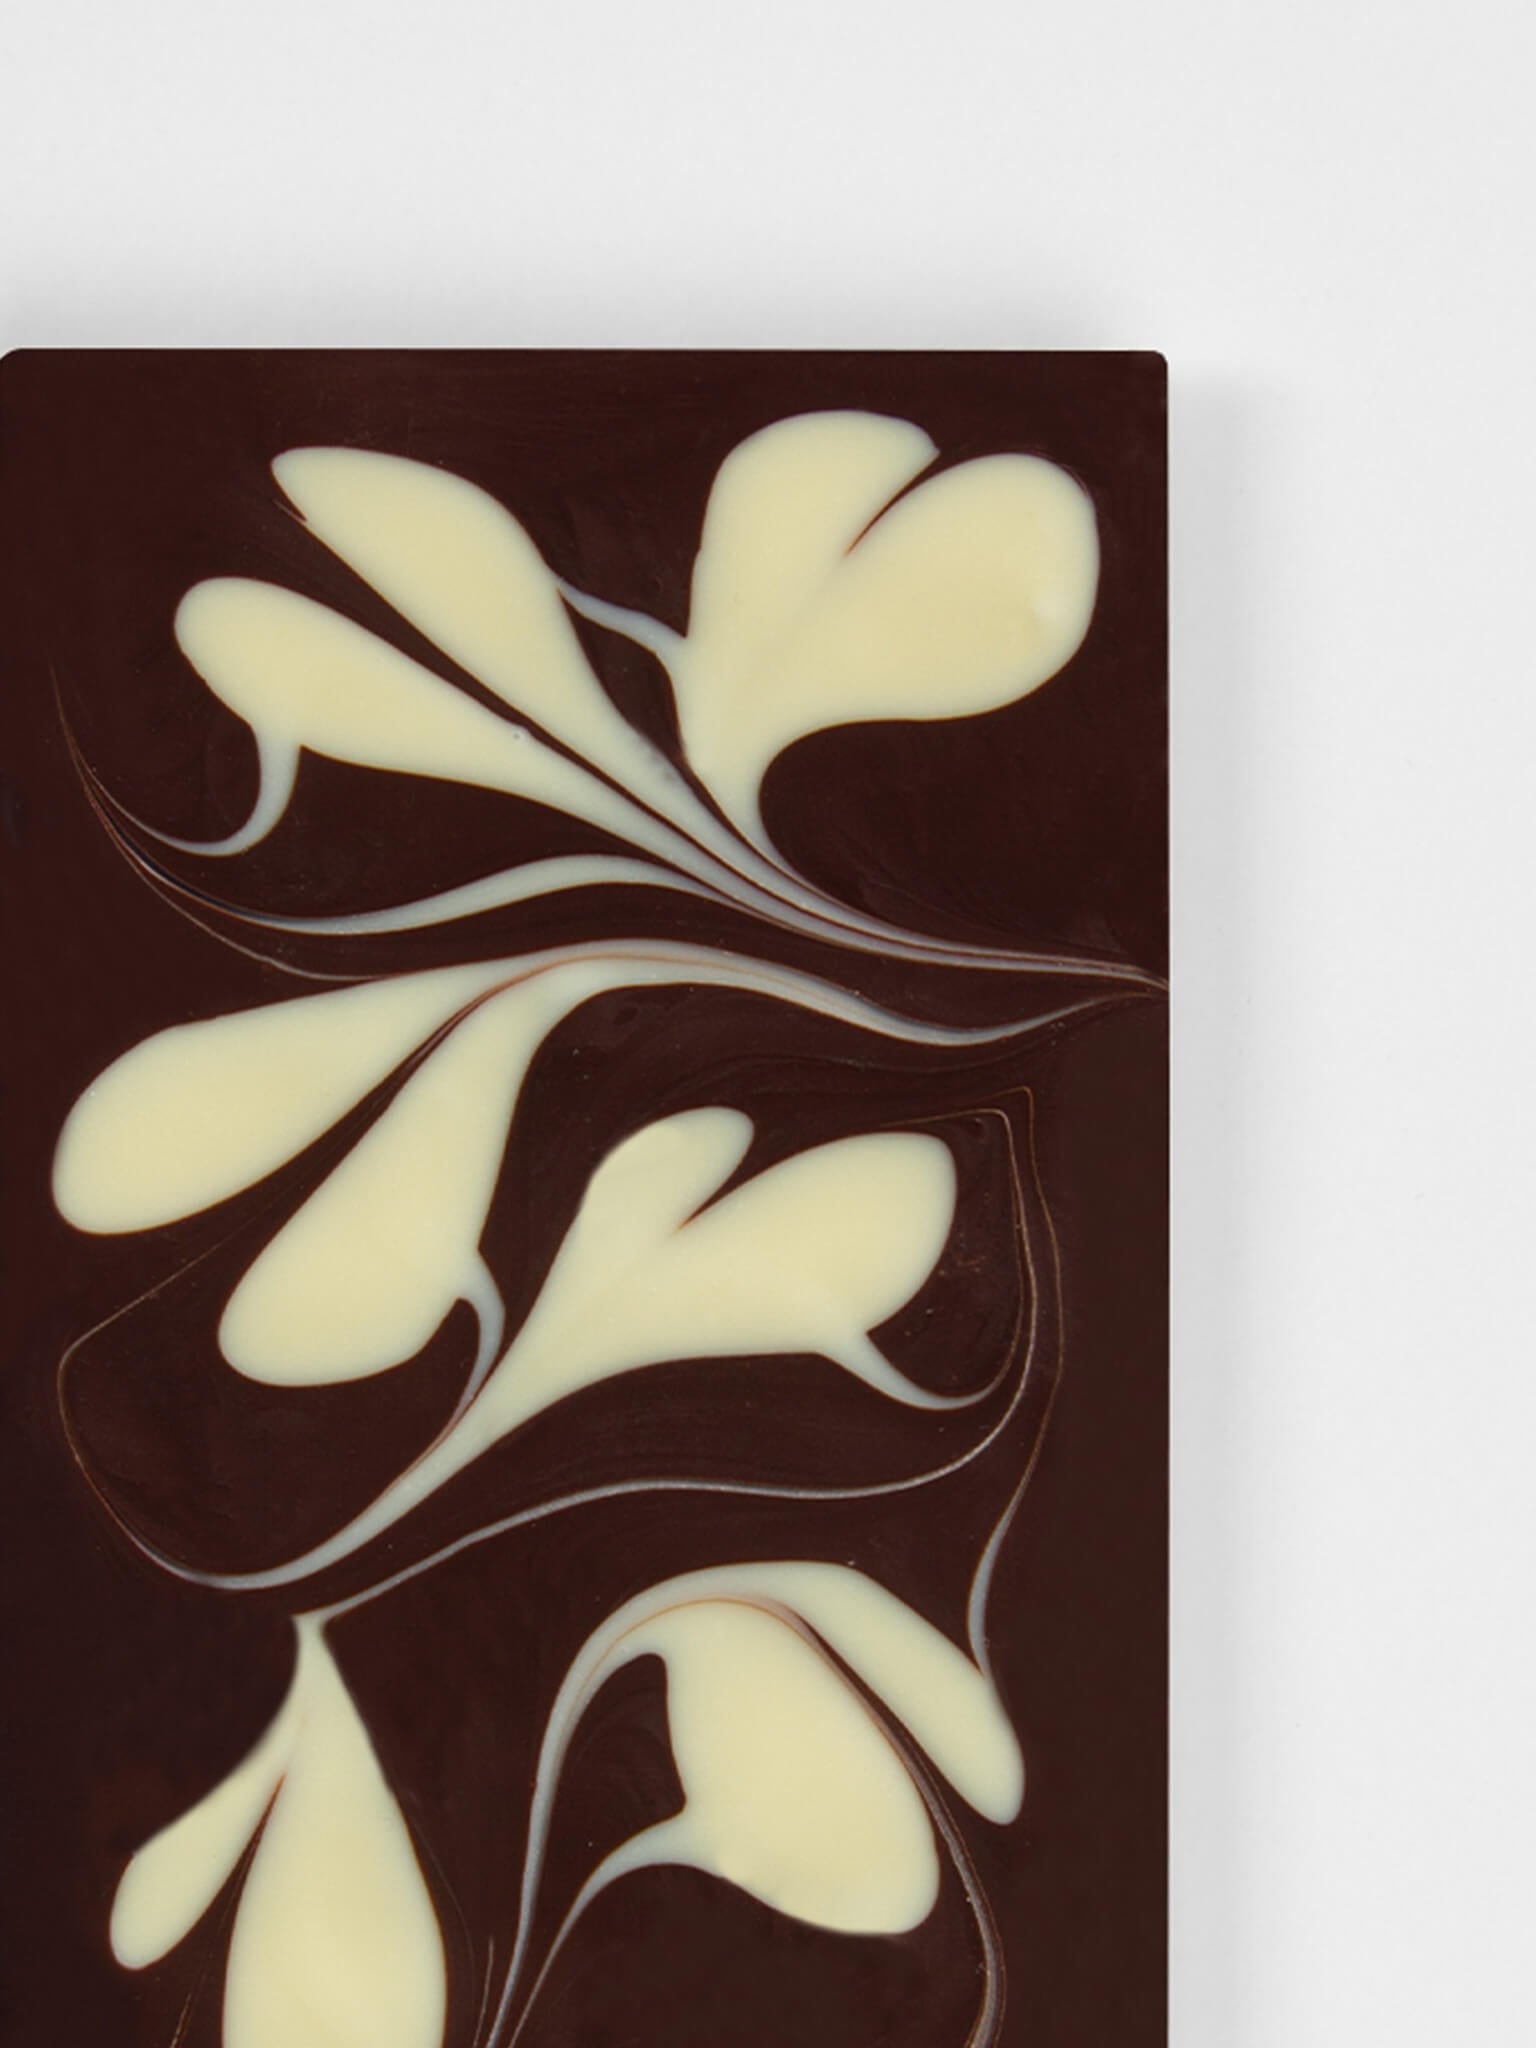 Feinste KSC Zartbitter Schokolade mit Herzen aus weißer Schokolade.